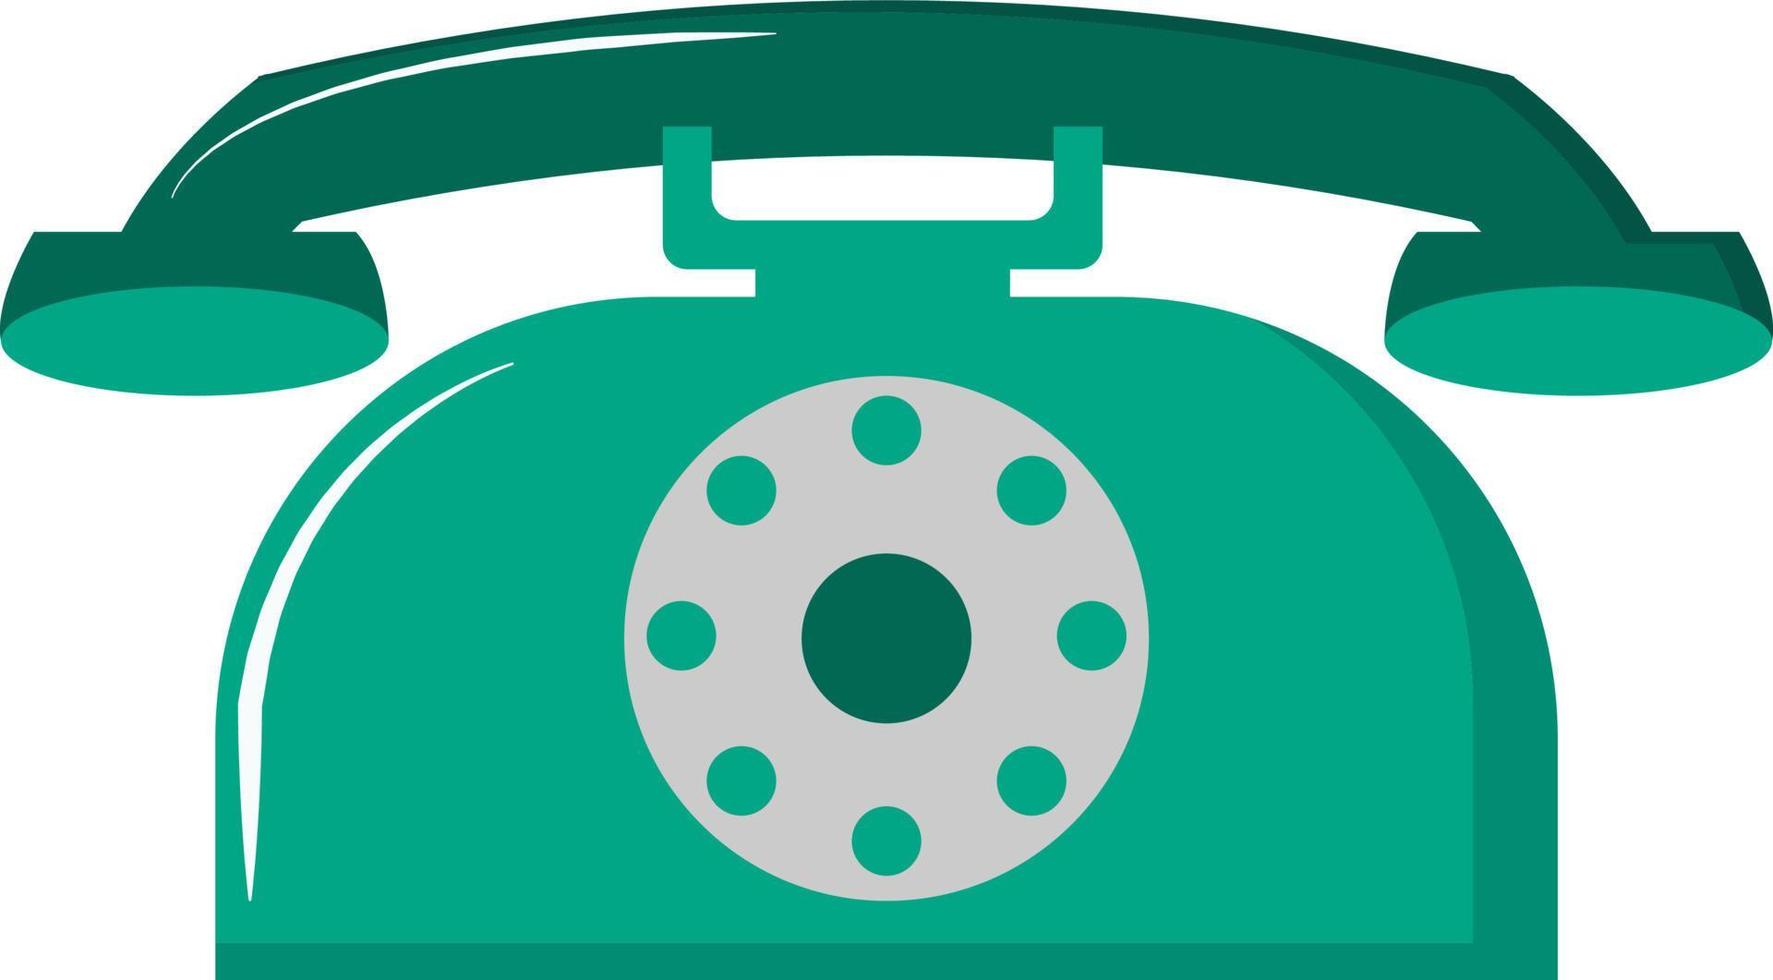 Teléfono verde retro, ilustración, vector sobre fondo blanco.